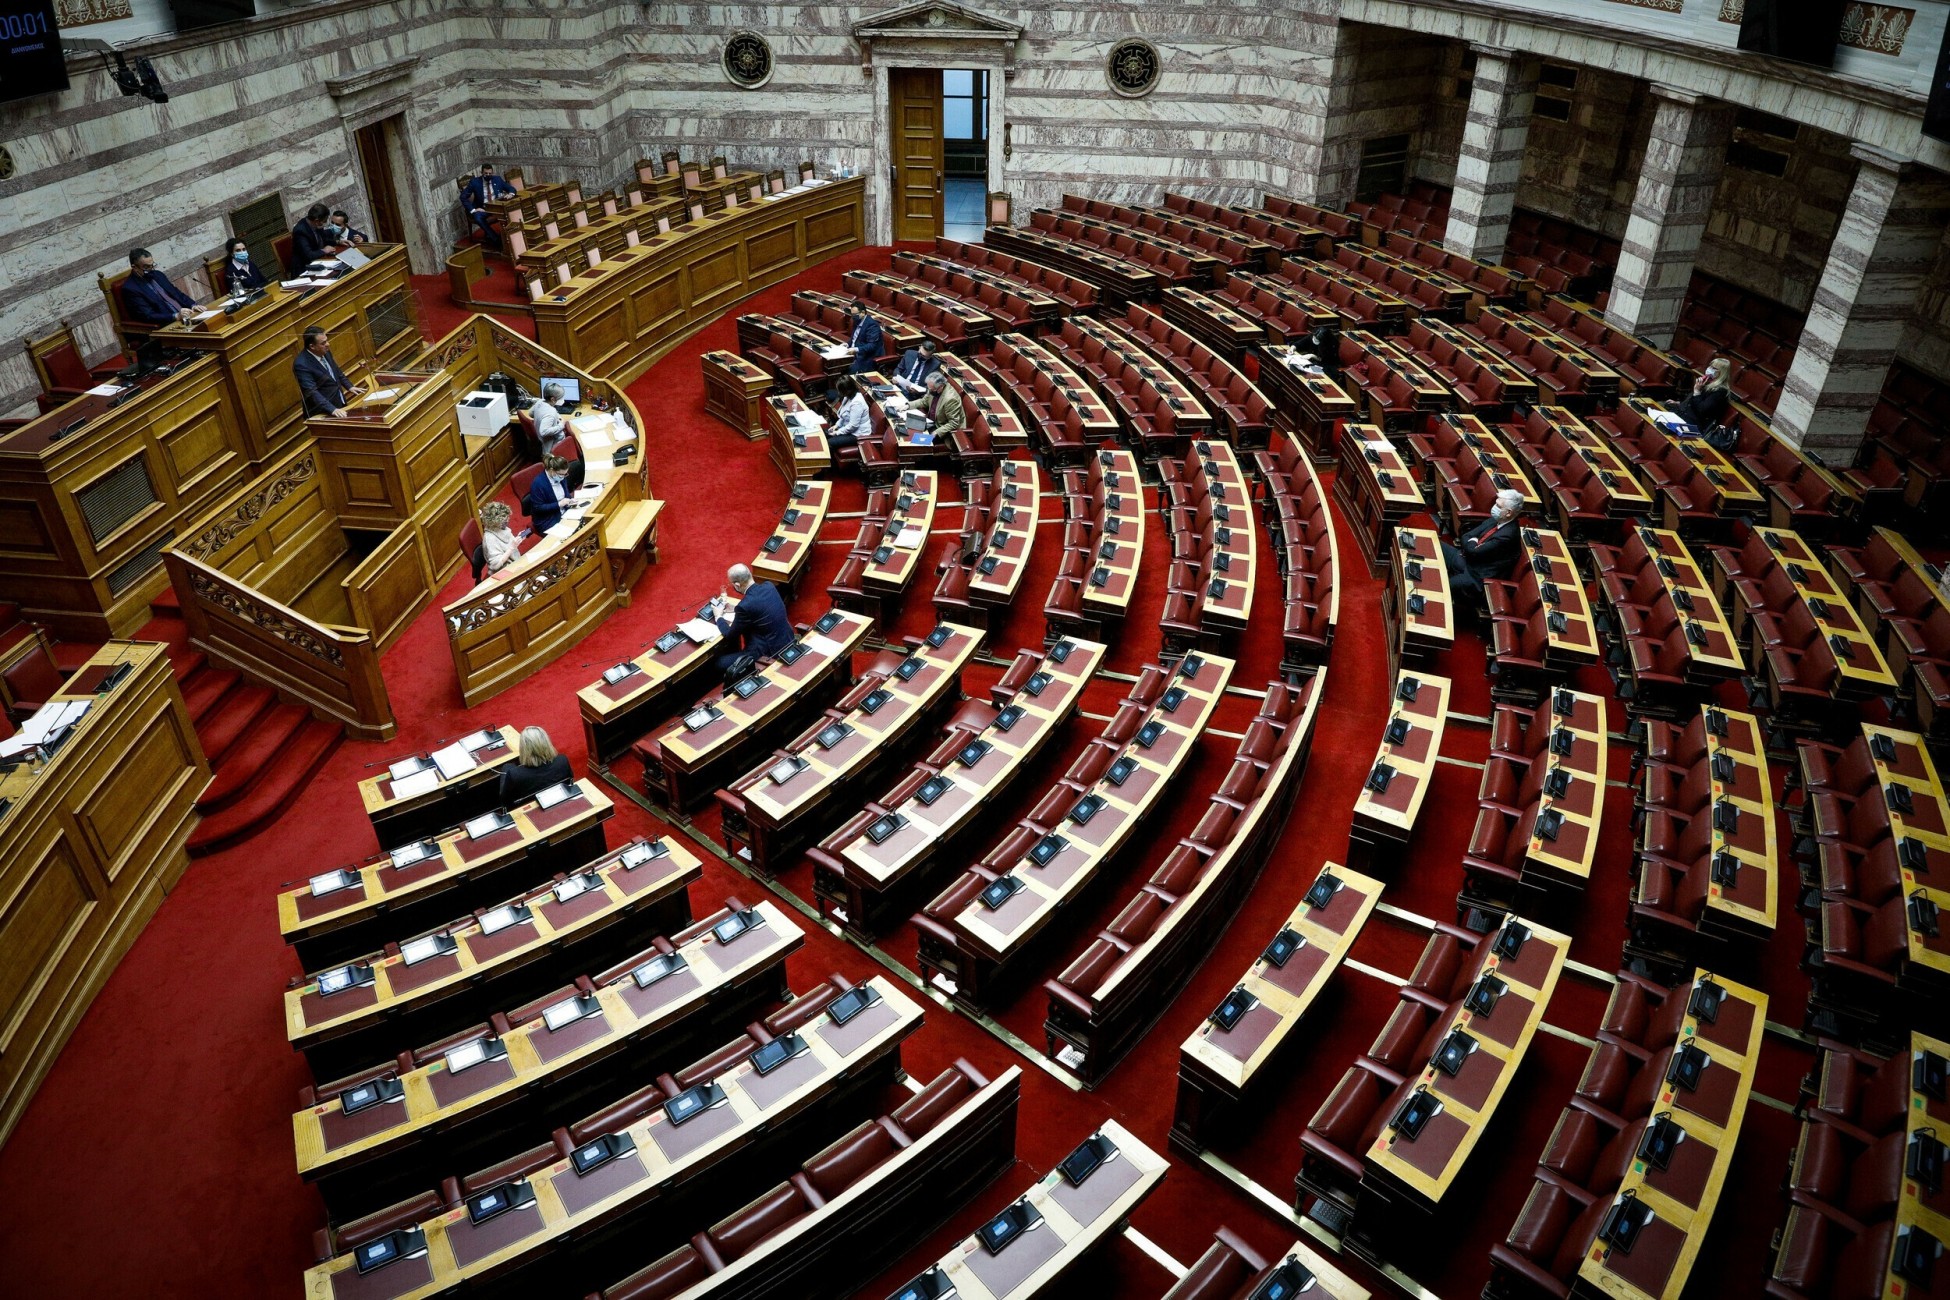 Ξεκίνησε στην Ολομέλεια της Βουλής η συζήτηση του νομοσχεδίου «Εξυγίανση των Ναυπηγείων Ελευσίνας»